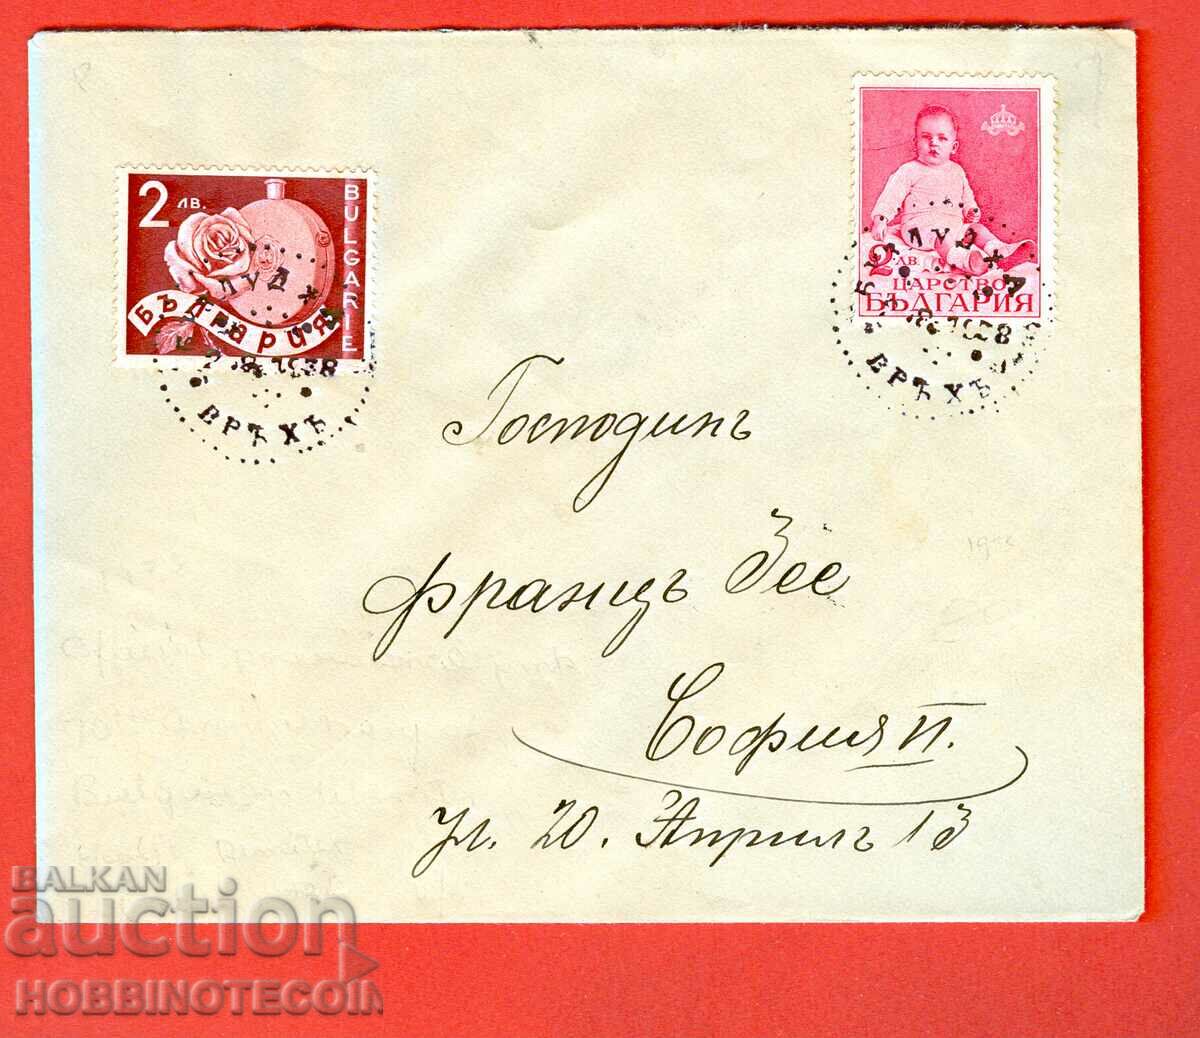 Ταξιδιωτική επιστολή ΒΟΥΛΓΑΡΙΑΣ BUZLUDJA - ΣΟΦΙΑ 1938 FRANZ ZEE